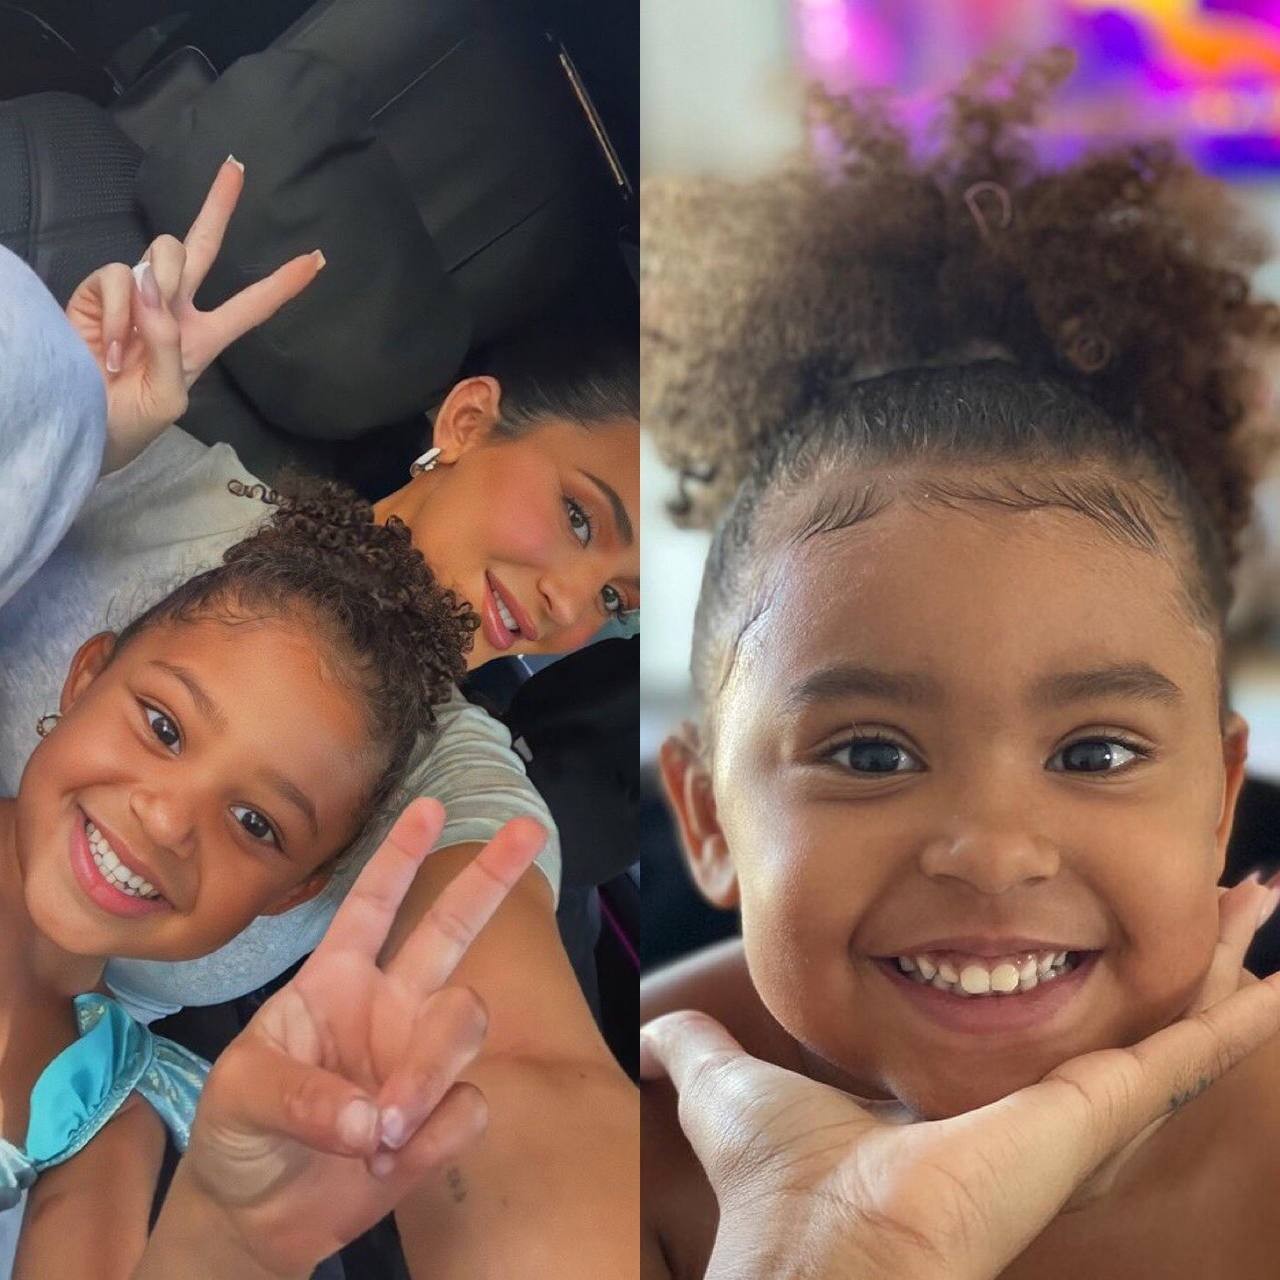 Pocah brinca sobre semelhança da filha, Vitória, com Stormi Webster e viraliza (Foto: Reprodução / Instagram)